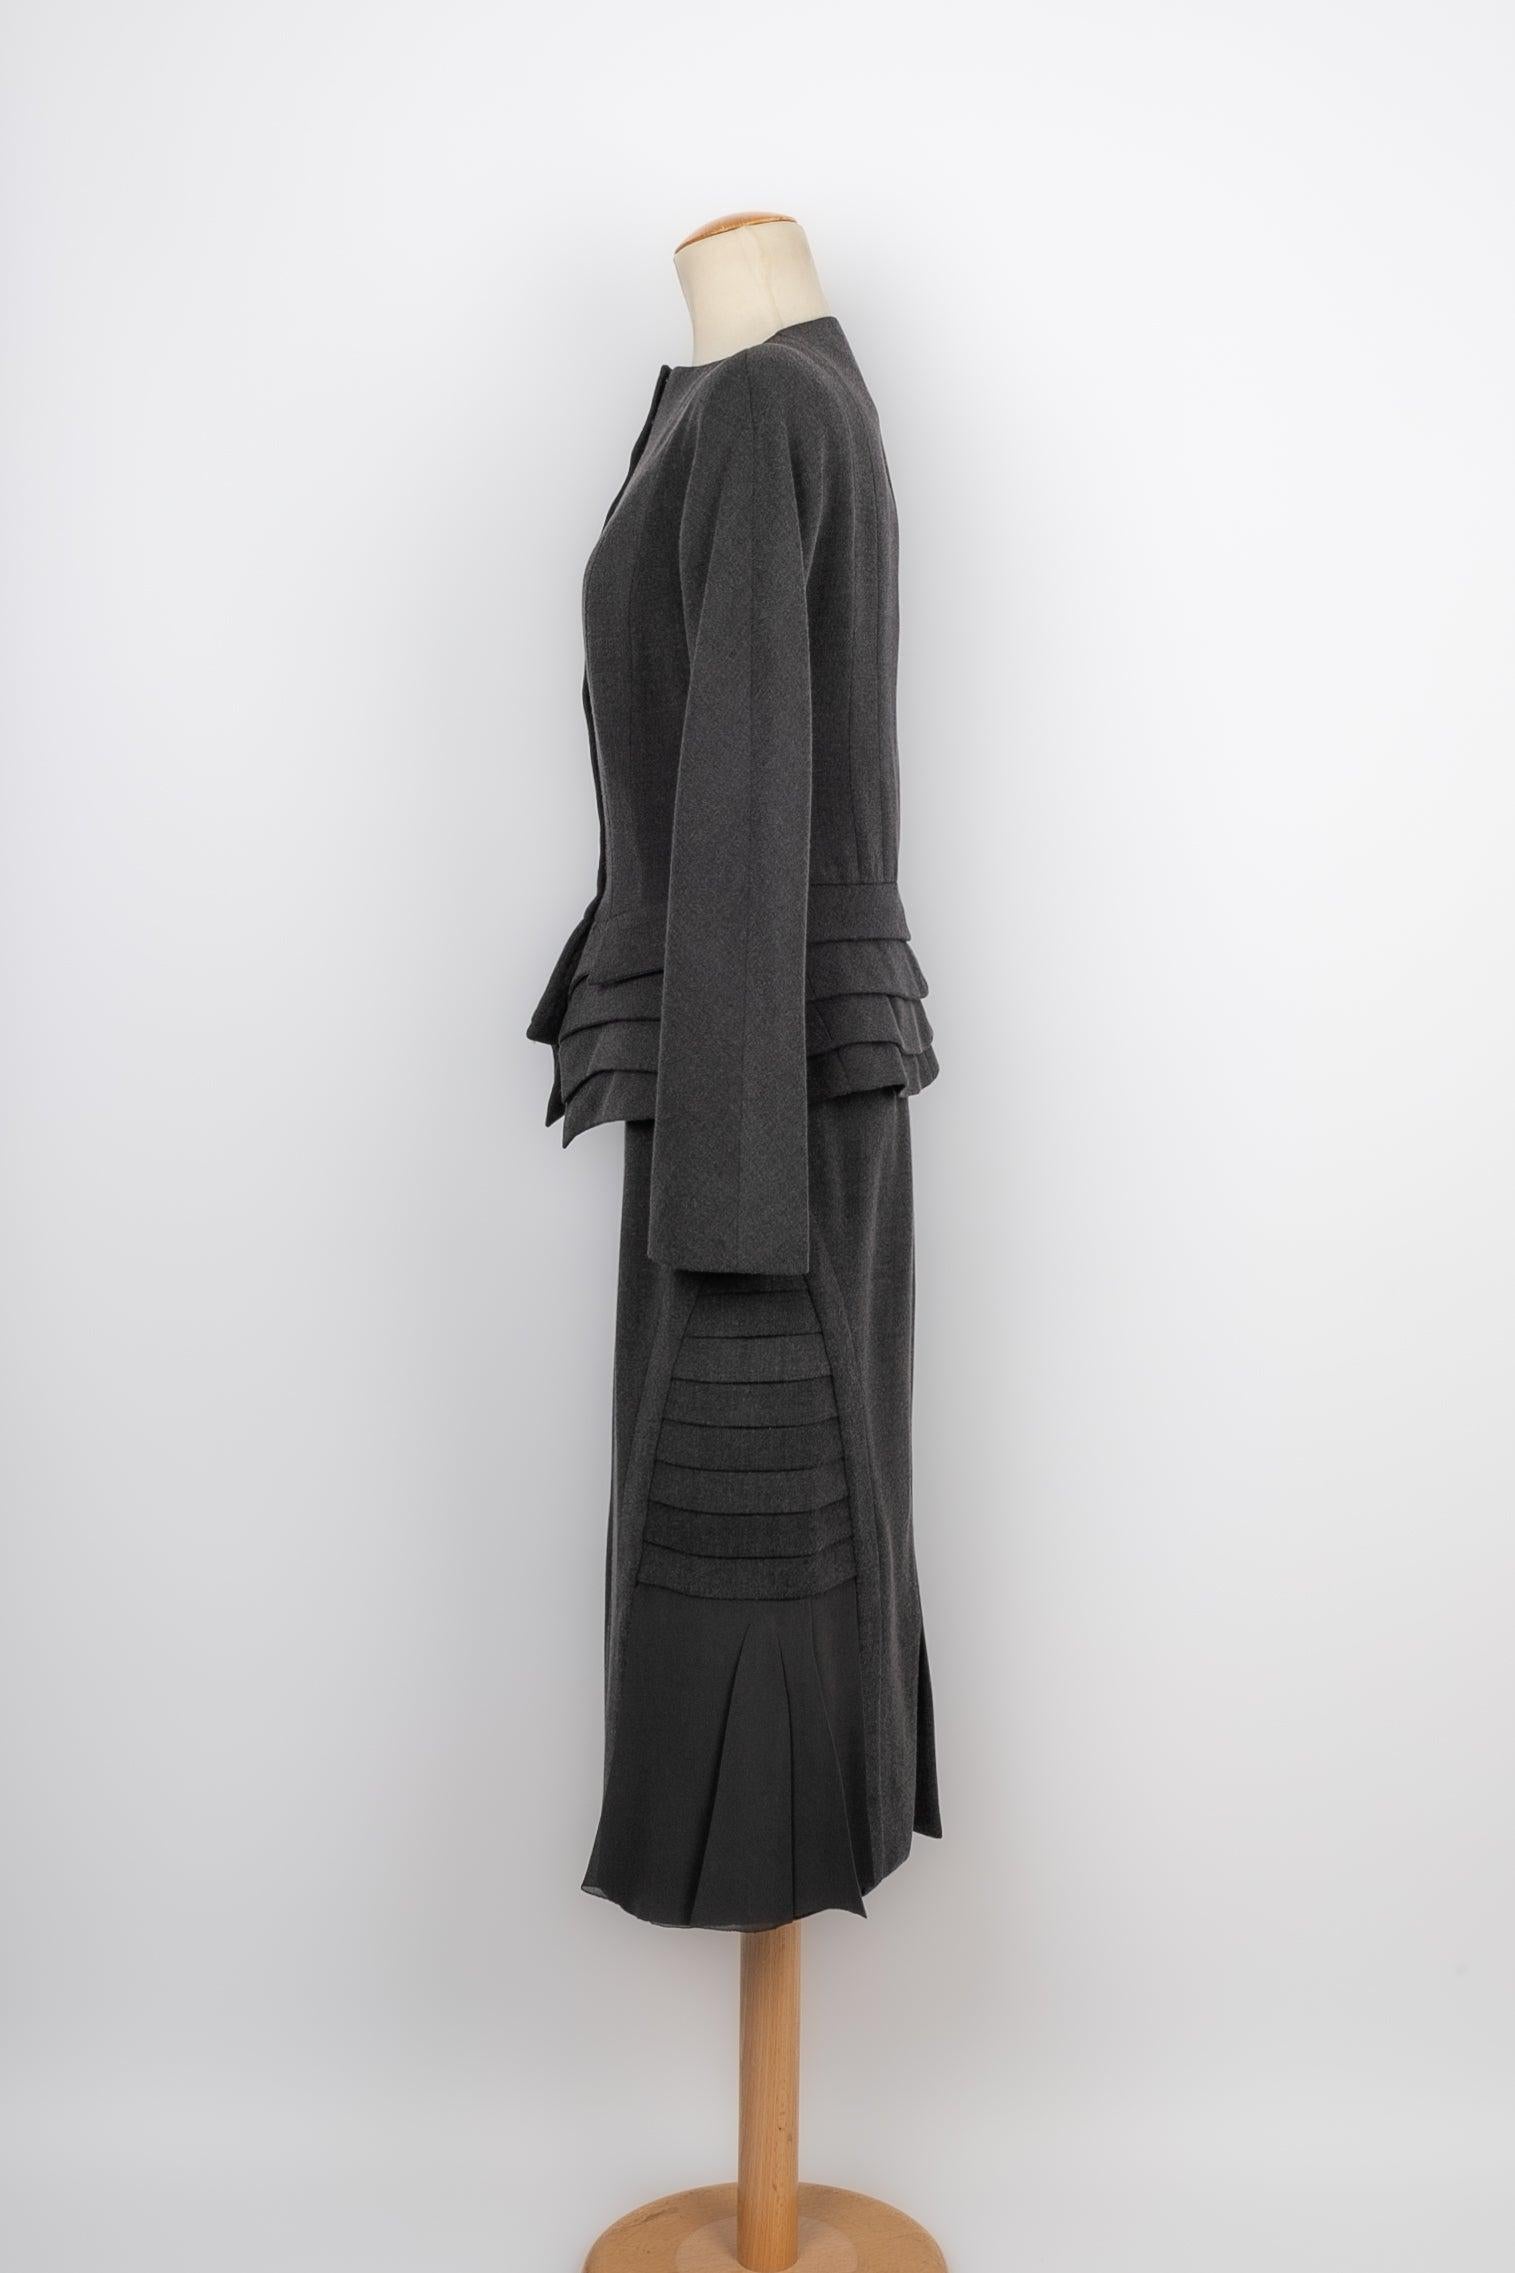 Dior- Ensemble Haute Couture en soie et laine composé d'une jupe et d'une veste. Aucune taille n'est indiquée, il convient à un 34FR.

Informations complémentaires :
Condit : Très bon état.
Dimensions : Veste : Largeur des épaules : 37 cm - Poitrine